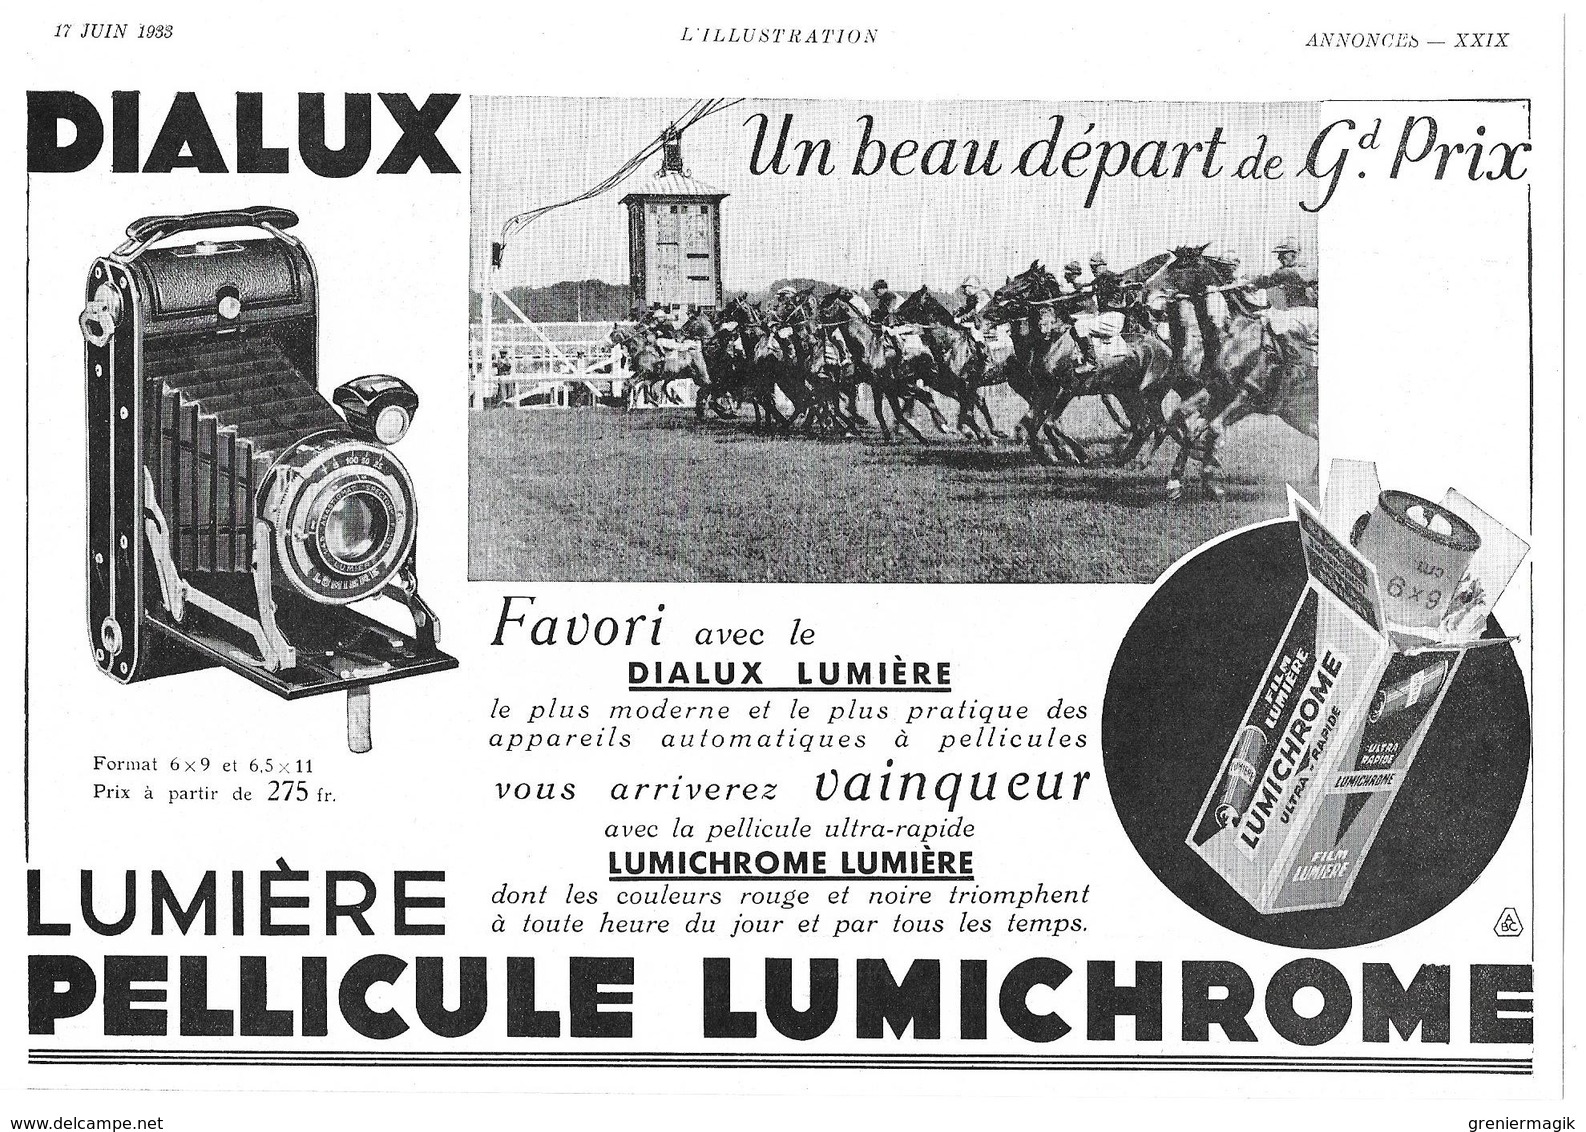 1933 Amilcar Cabriolet Décapotable (Automobile-Voiture-Usines à Saint-Denis) - Dialux Pellicule Lumichrome (publicité) - Advertising